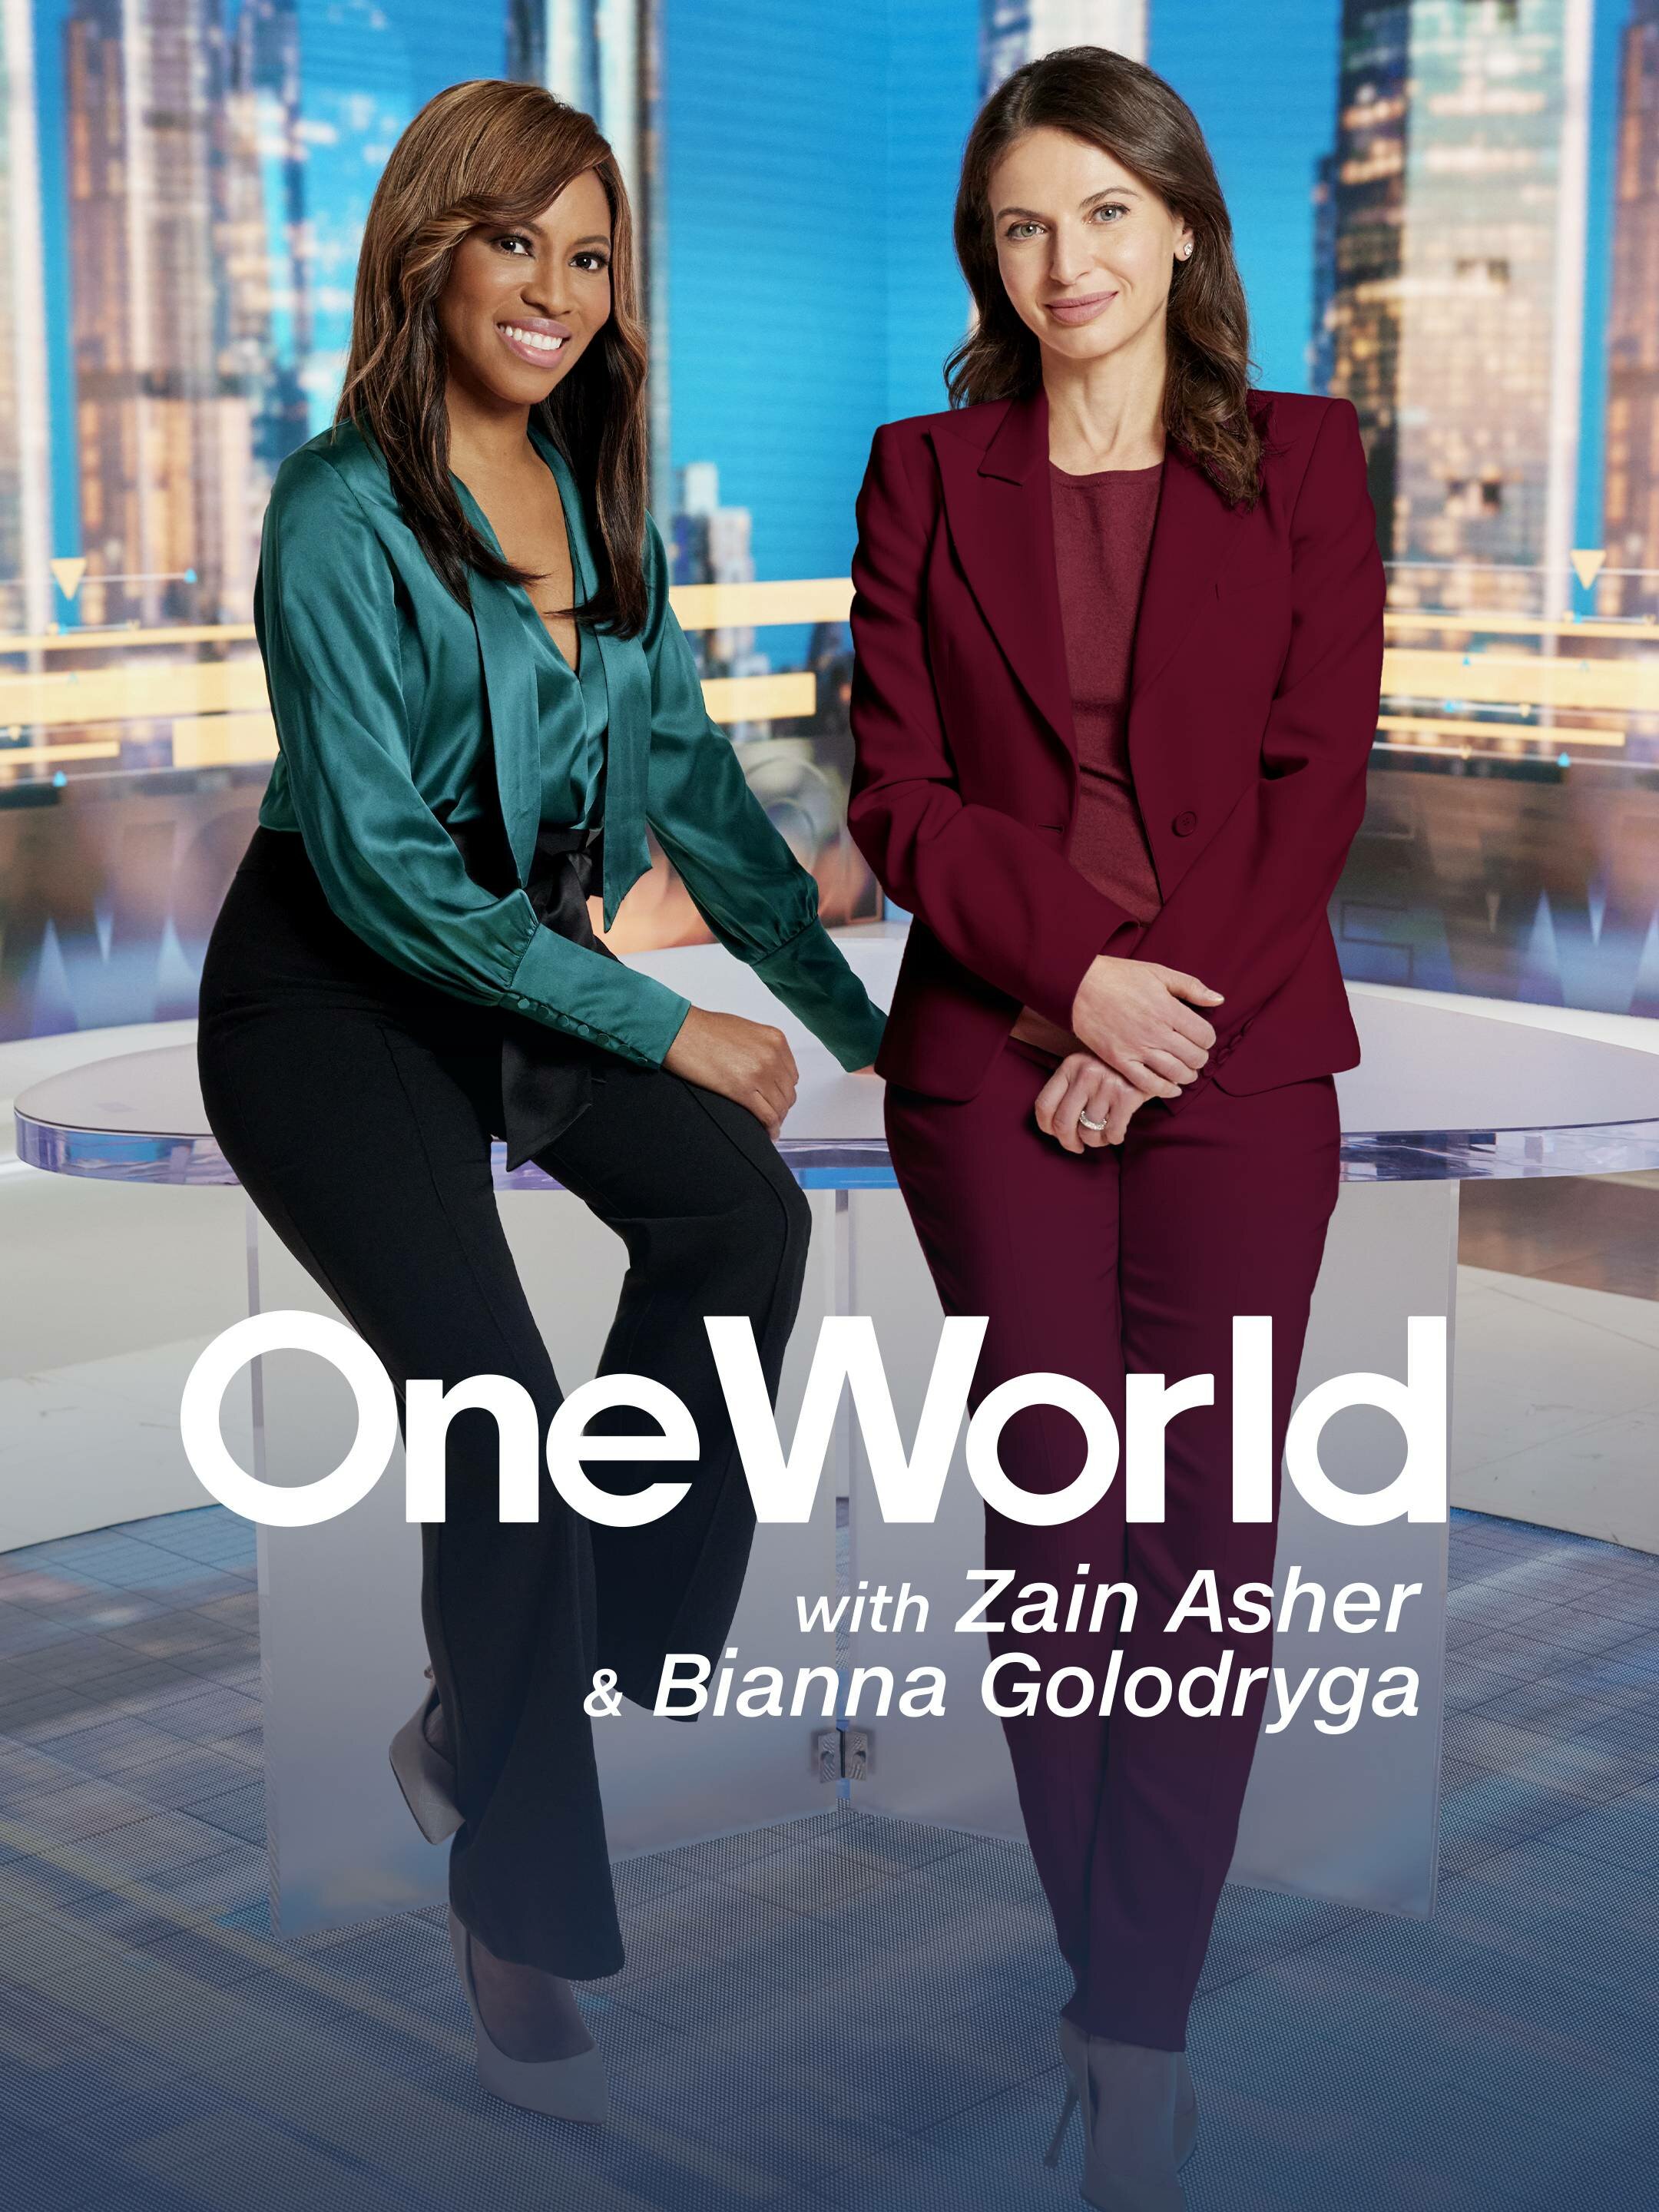 One World with Zain Asher and Bianna Golodryga ne zaman